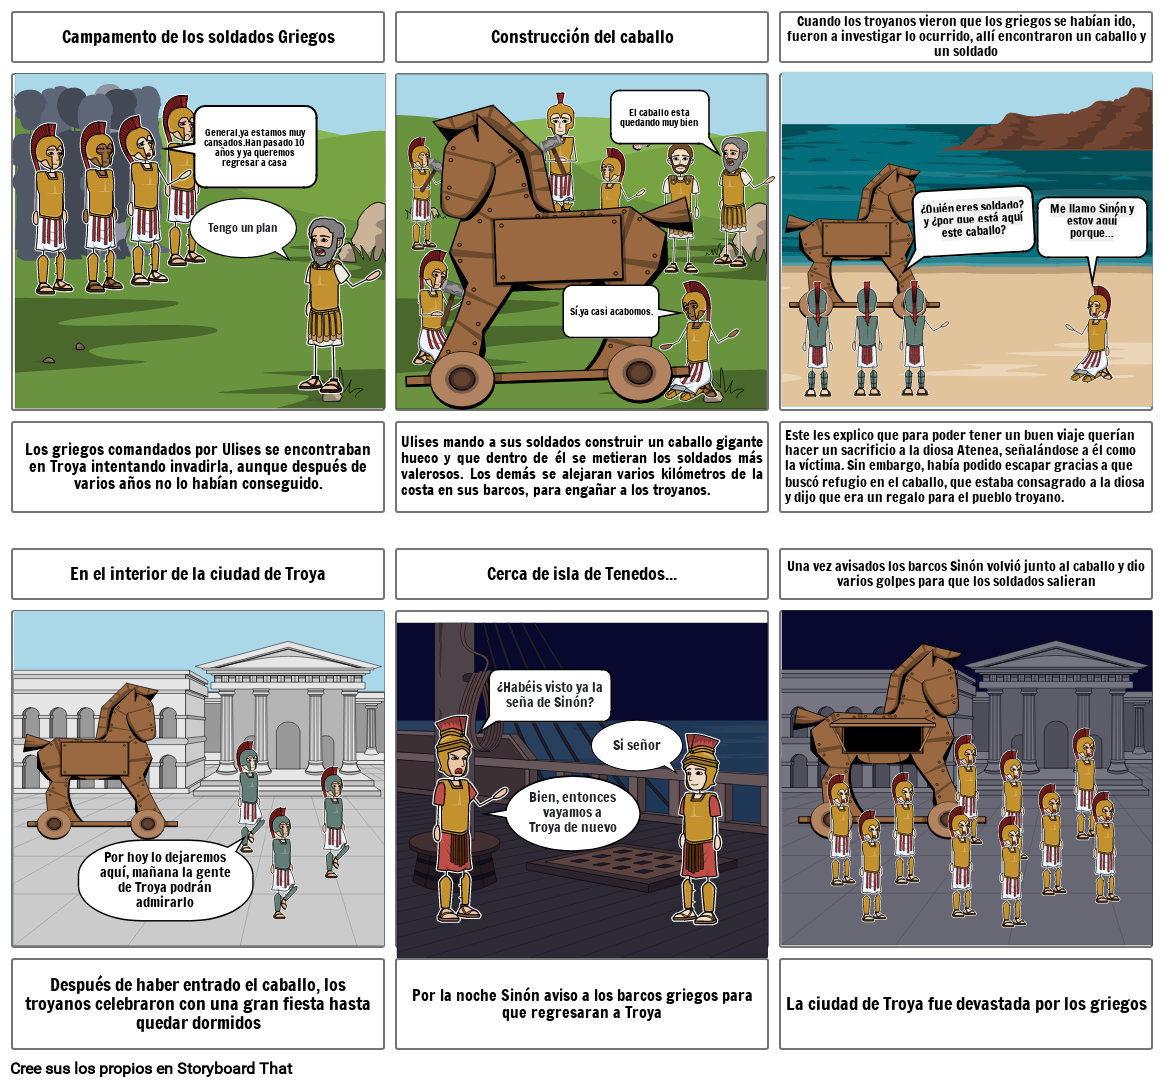 Guerra de Troia. Storyboard por e5ed5ba3